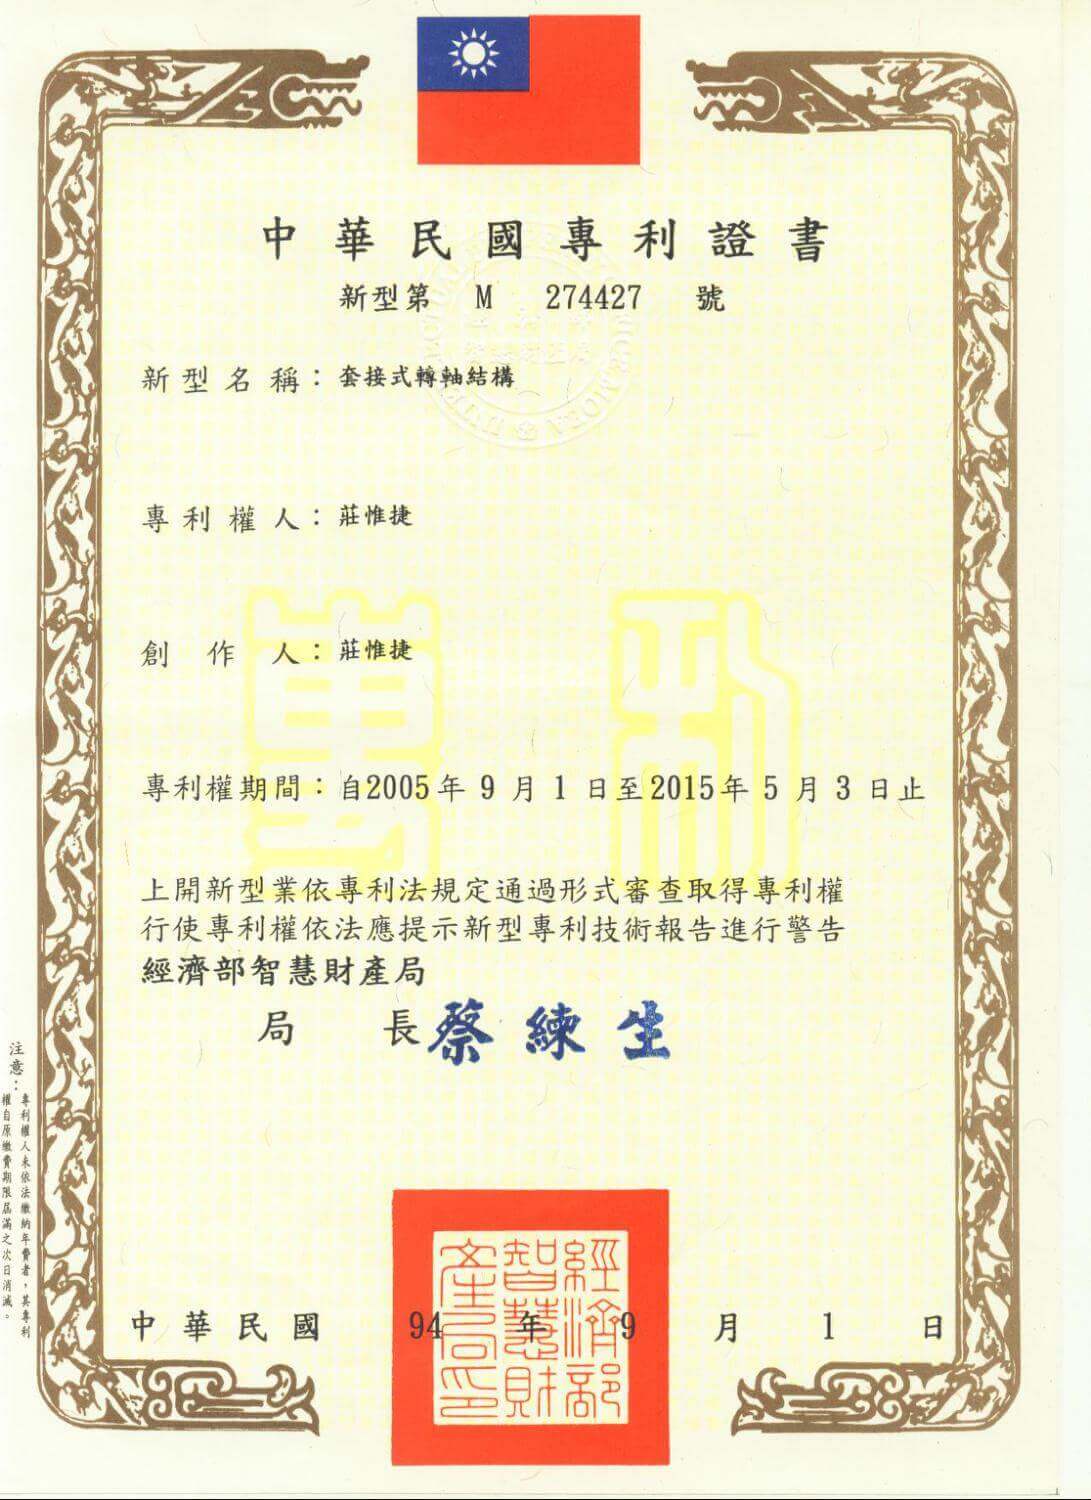 Chienfu-Tec CNC patents in Taiwan-29